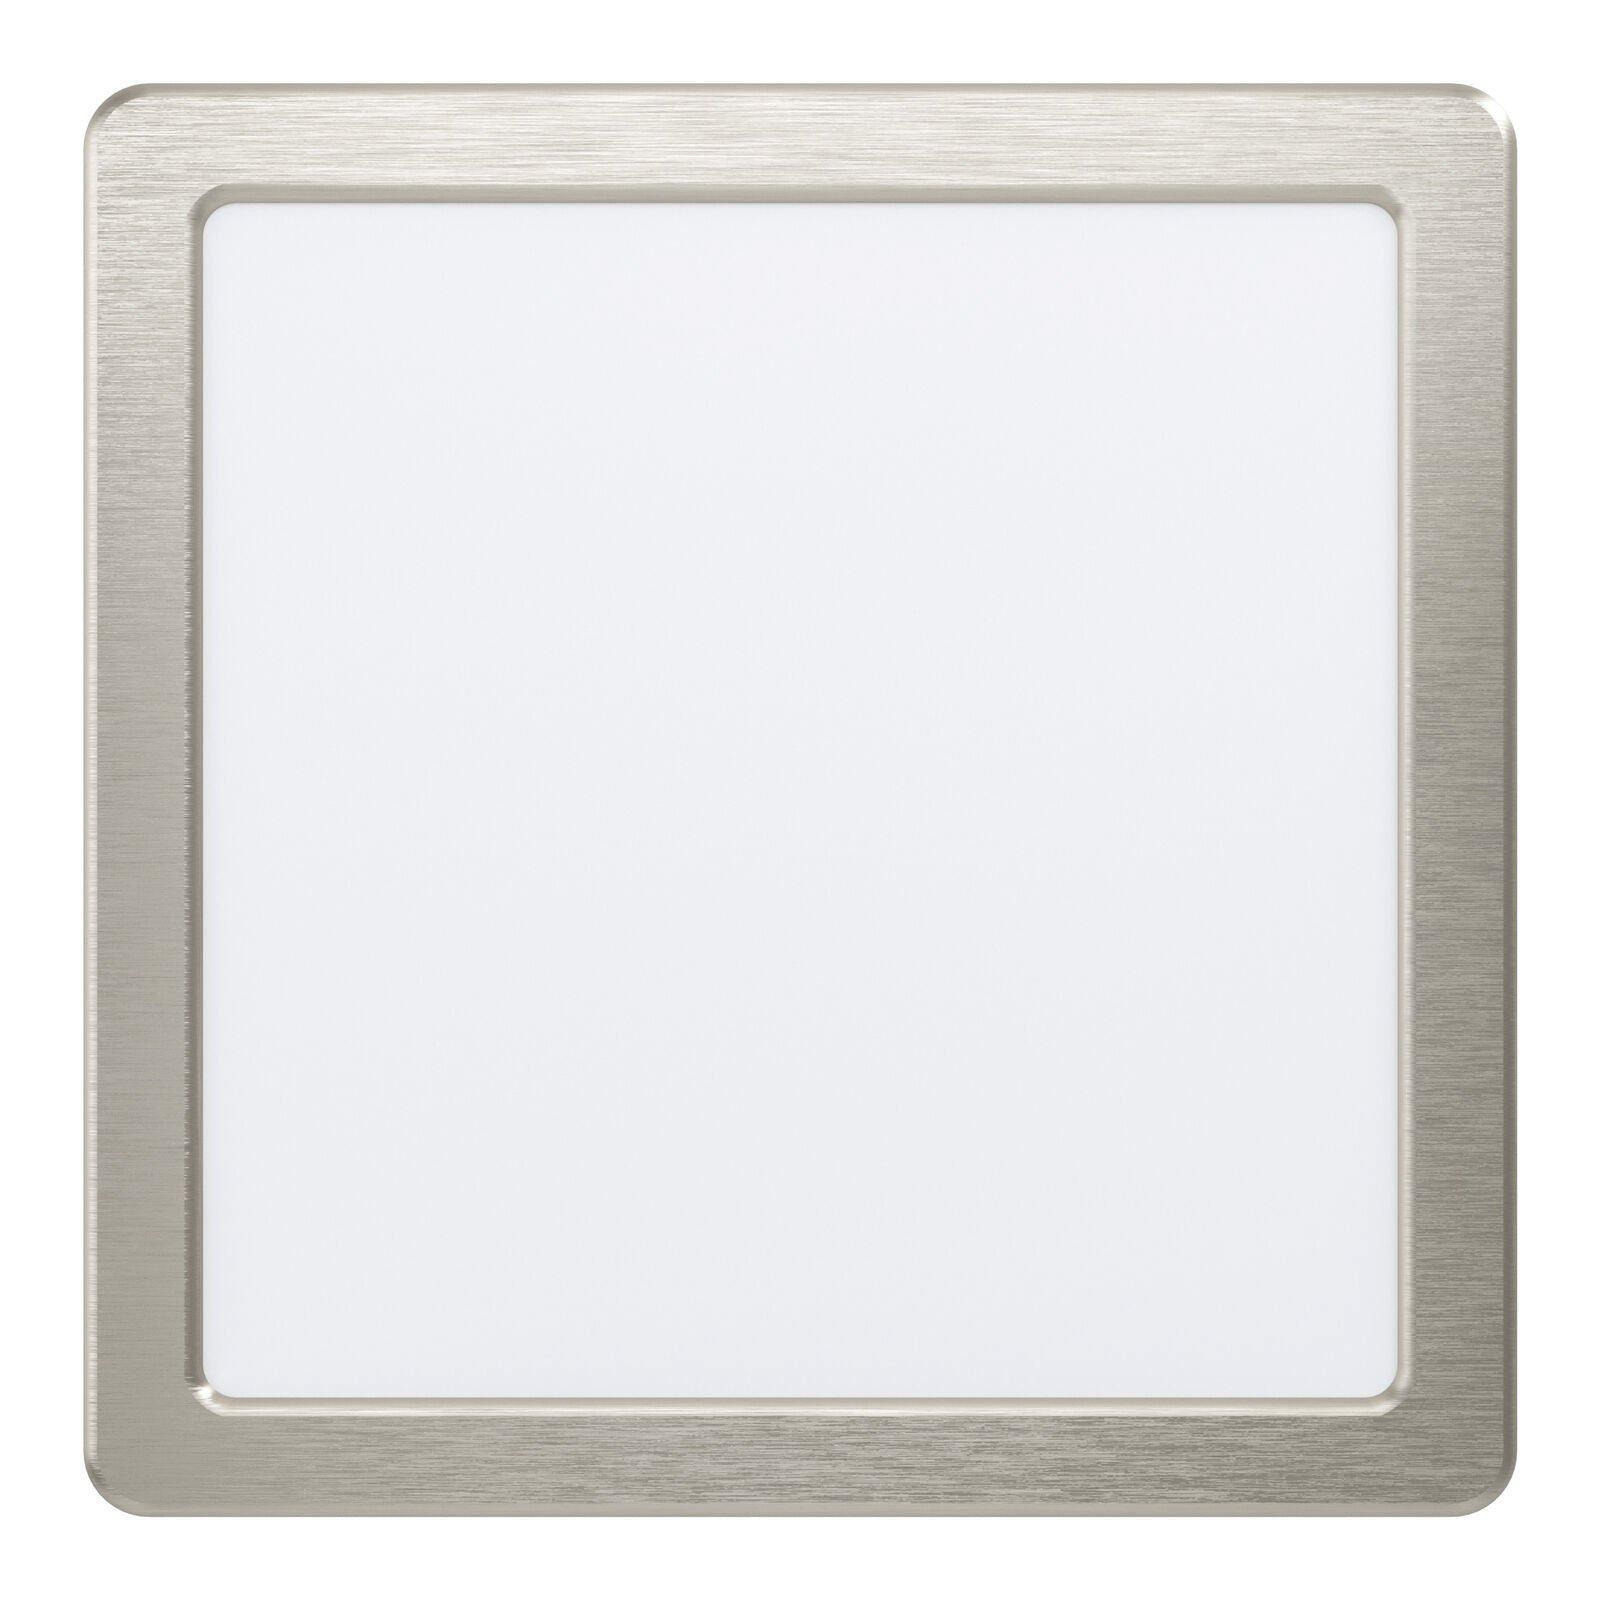 Wall / Ceiling Flush Downlight Satin Nickel Spotlight 16.5W Built in LED - image 1